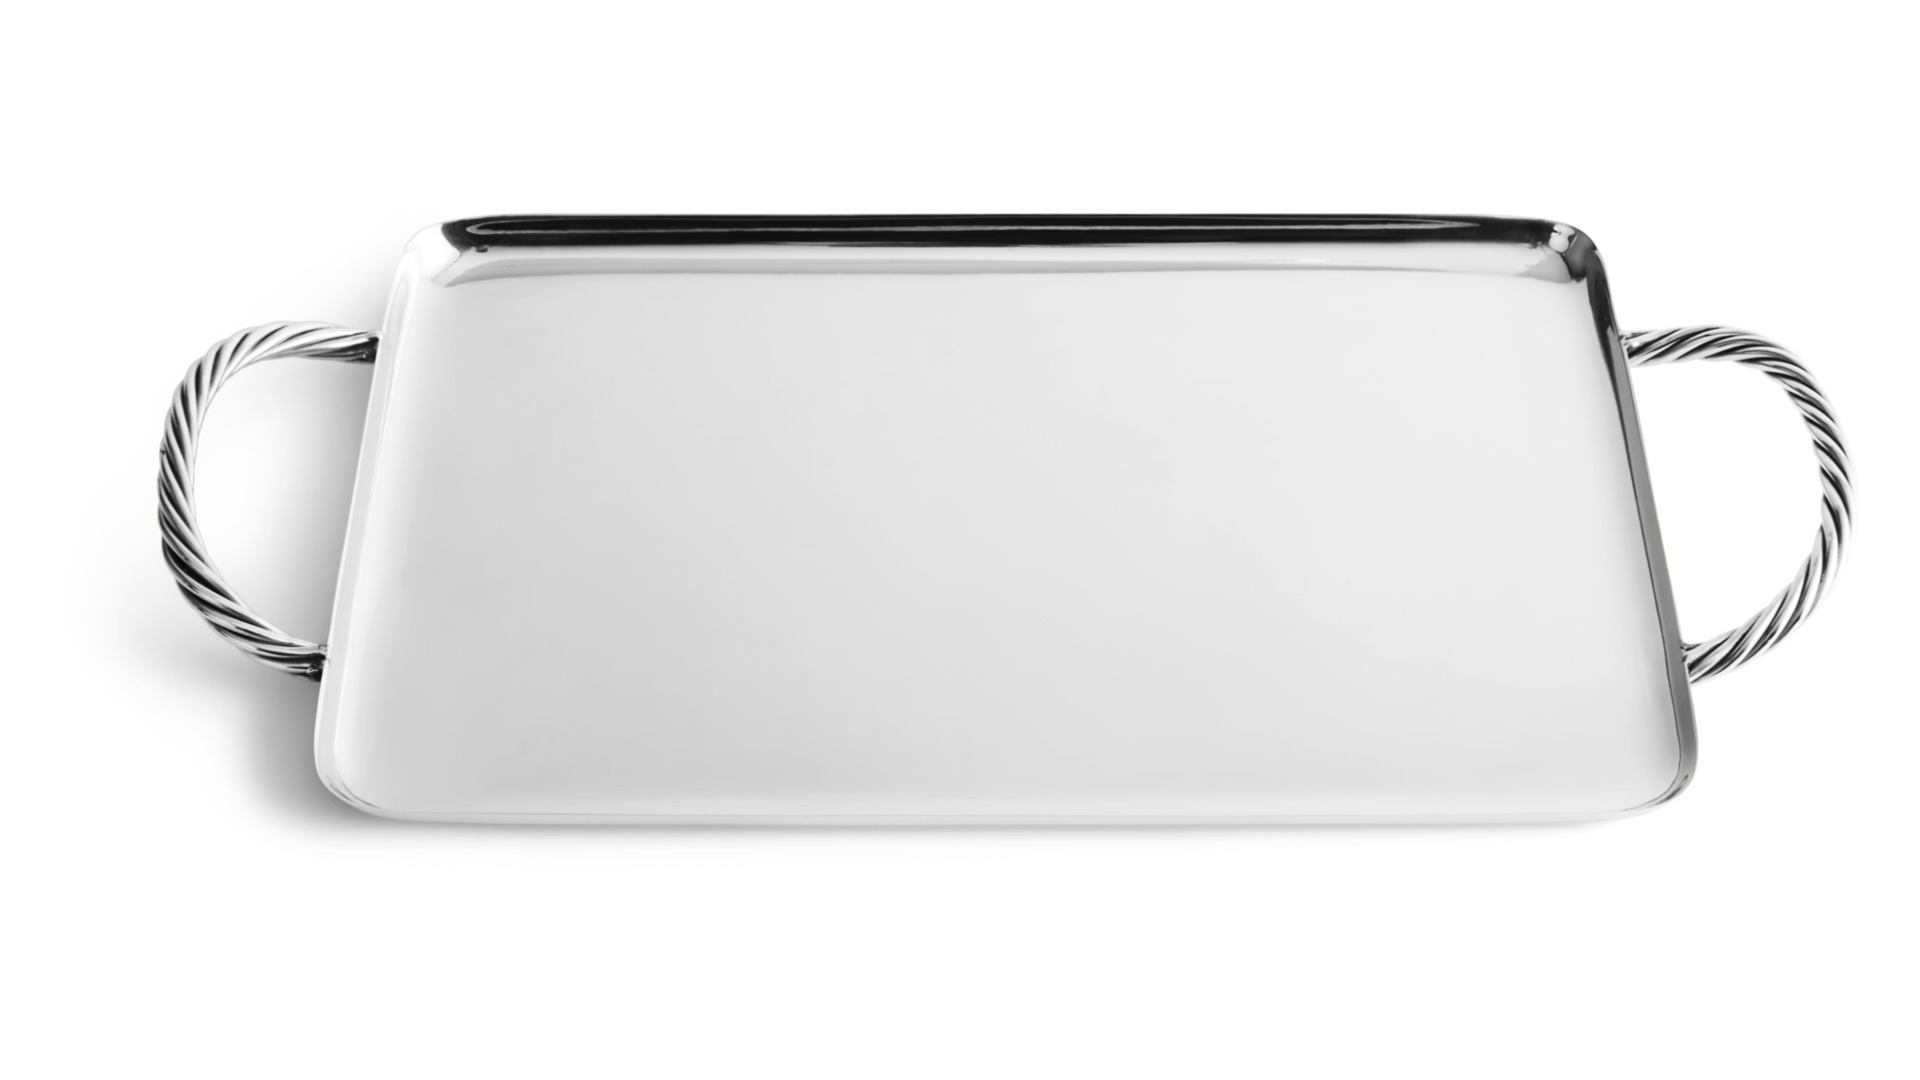 Поднос прямоугольный с ручками Michael Aram Твист 41x20 см, серебристый